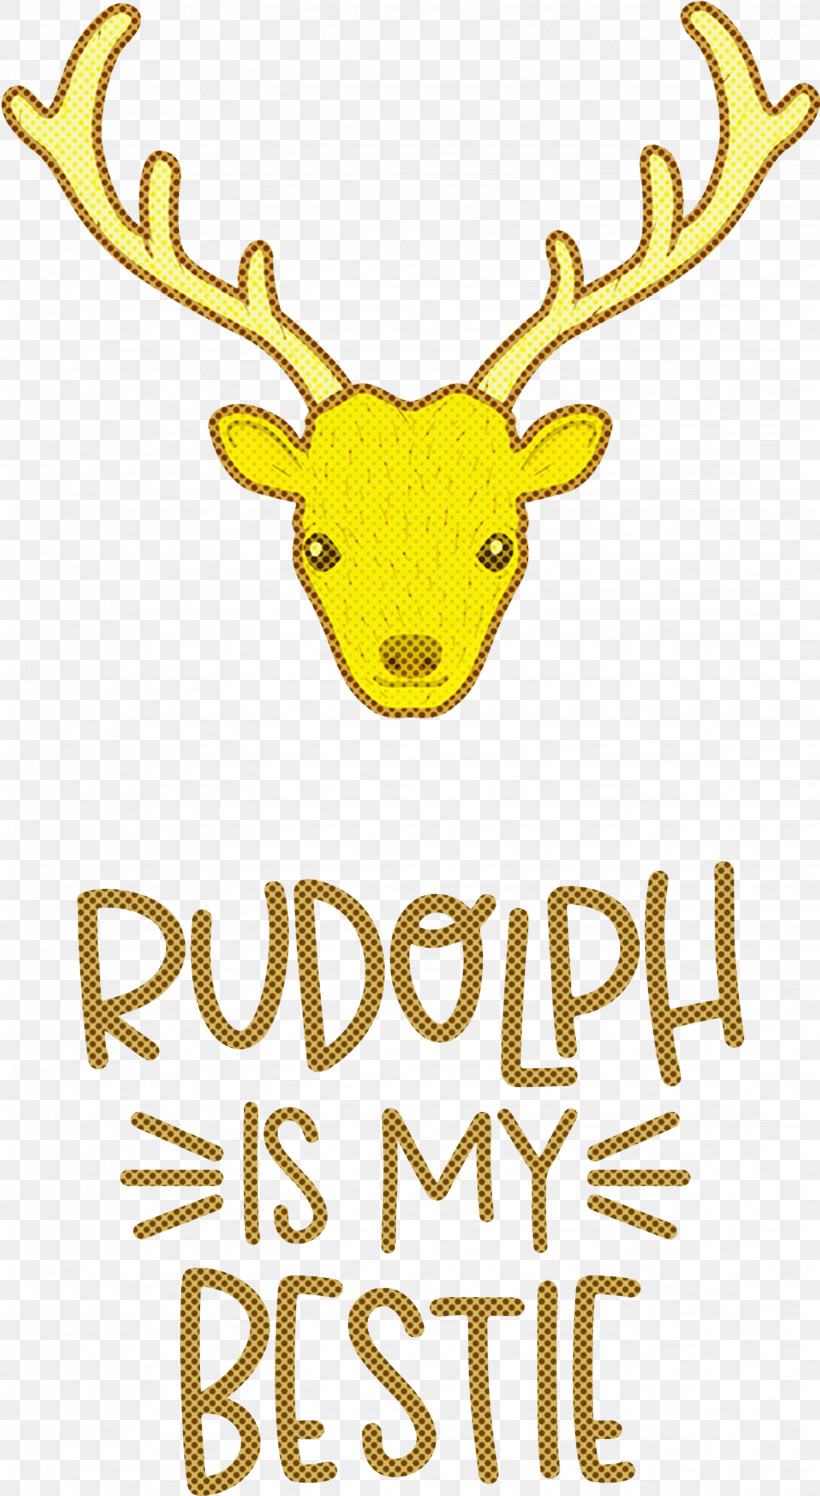 Rudolph Is My Bestie Rudolph Deer, PNG, 1644x3000px, Rudolph Is My Bestie, Animal Figurine, Antler, Christmas, Deer Download Free